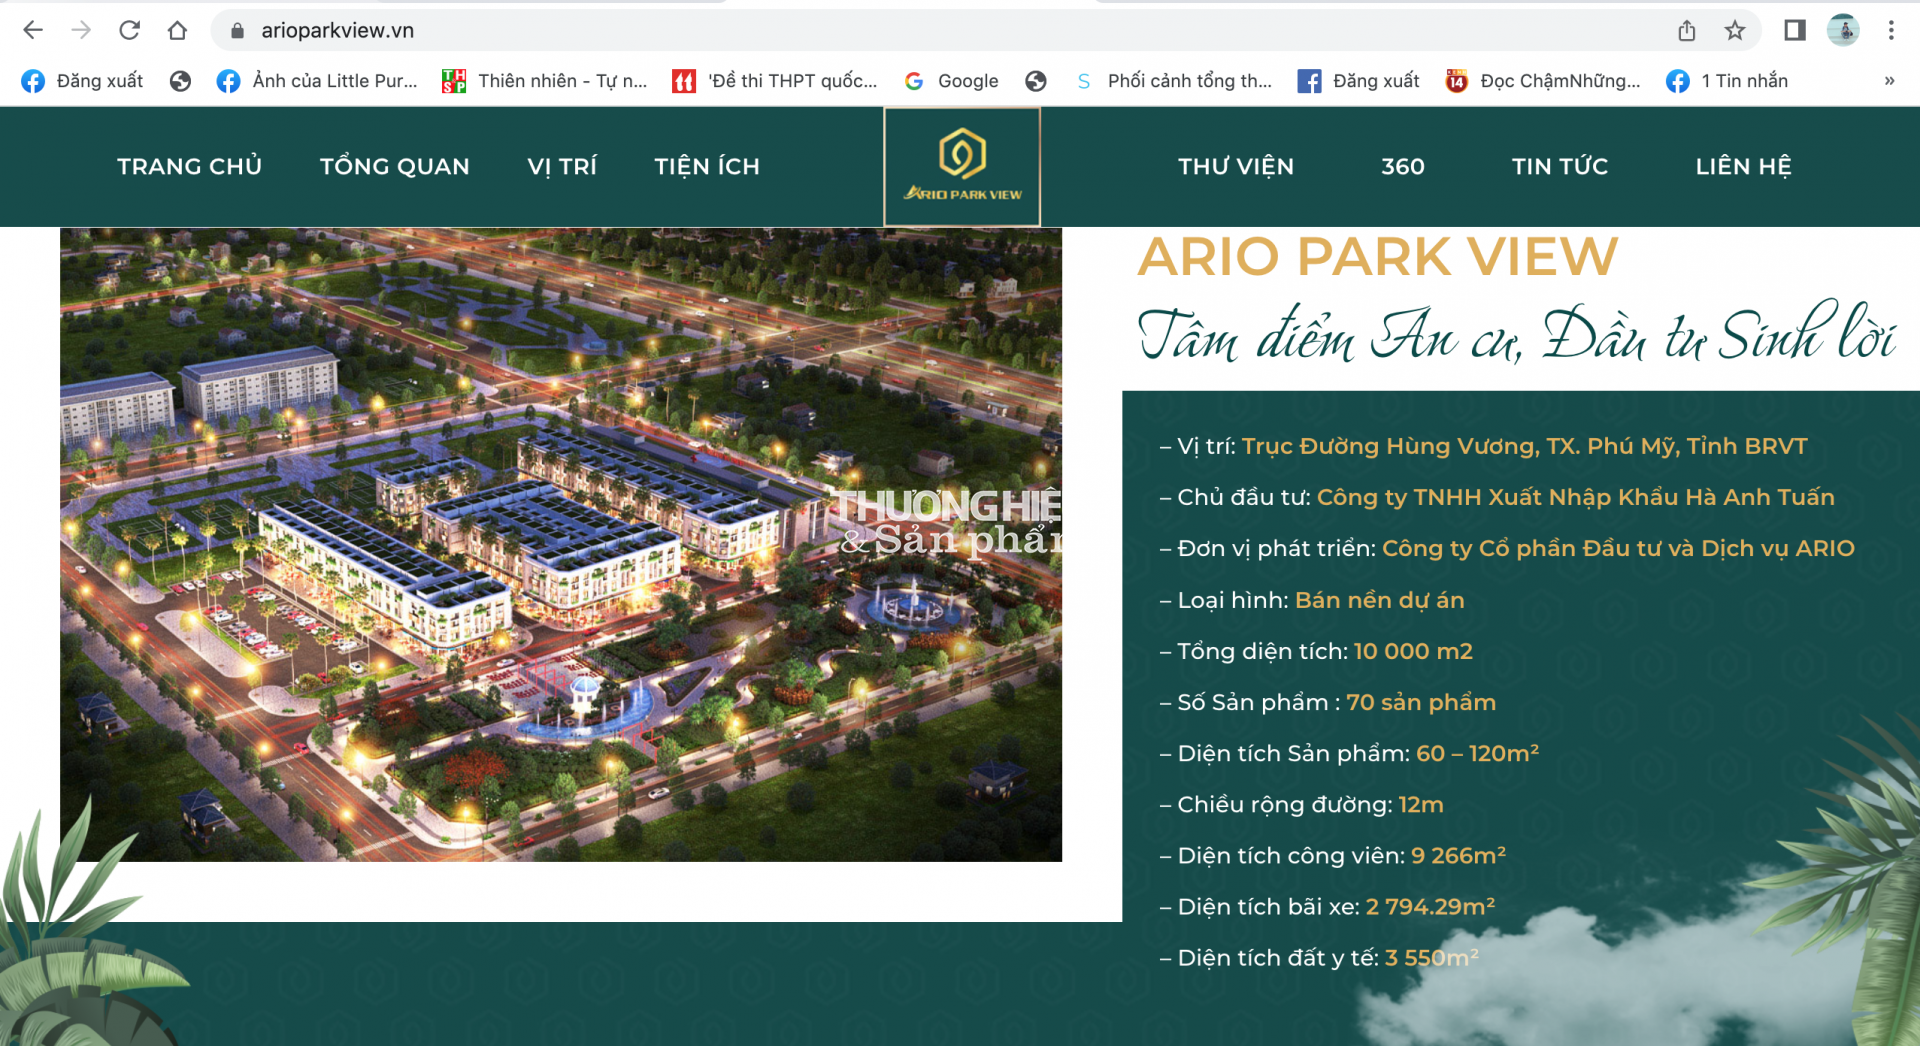 “Lá bùa” nào trên dự án Ario Park View của Ario Group?